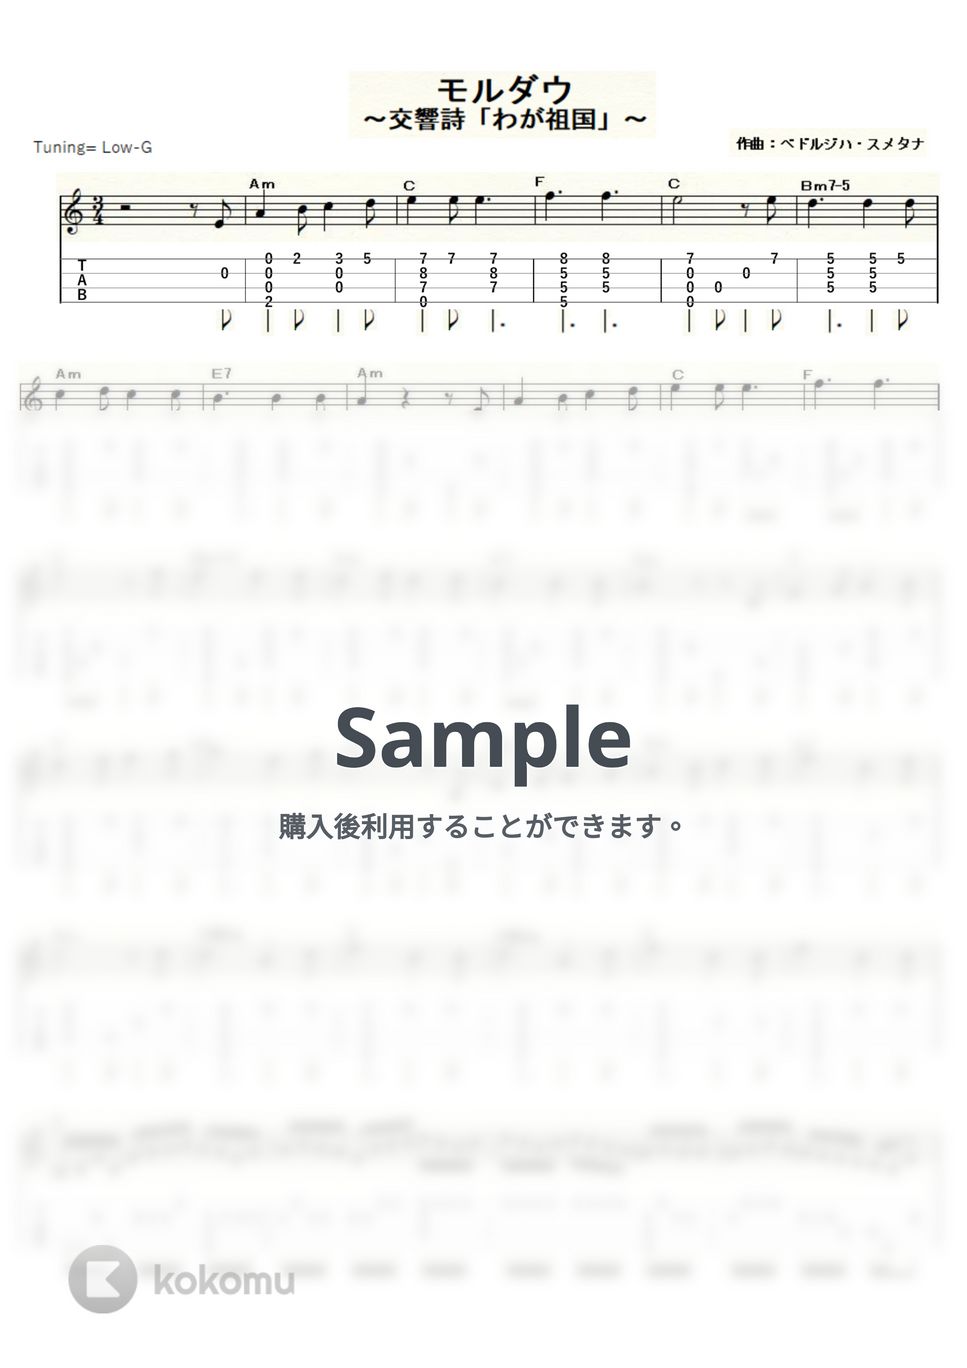 スメタナ - モルダウ～交響詩「わが祖国」～ (ｳｸﾚﾚｿﾛ / Low-G / 中級) by ukulelepapa